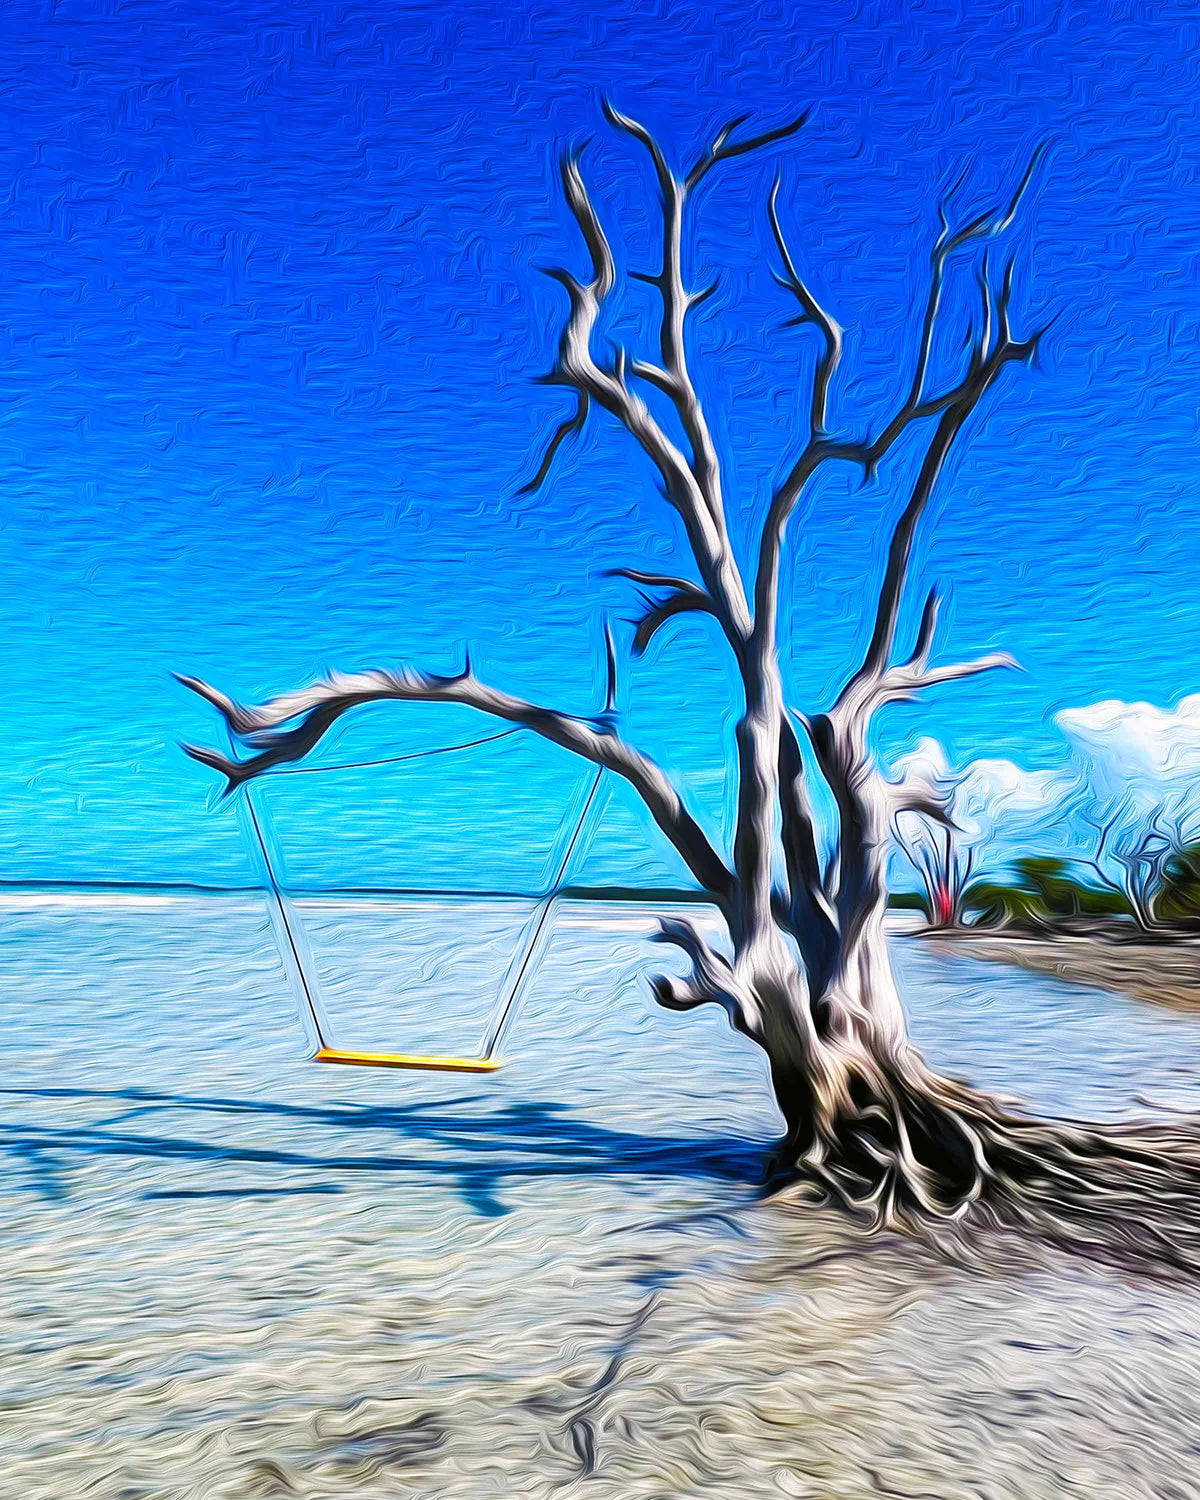 The Swing (Key West)